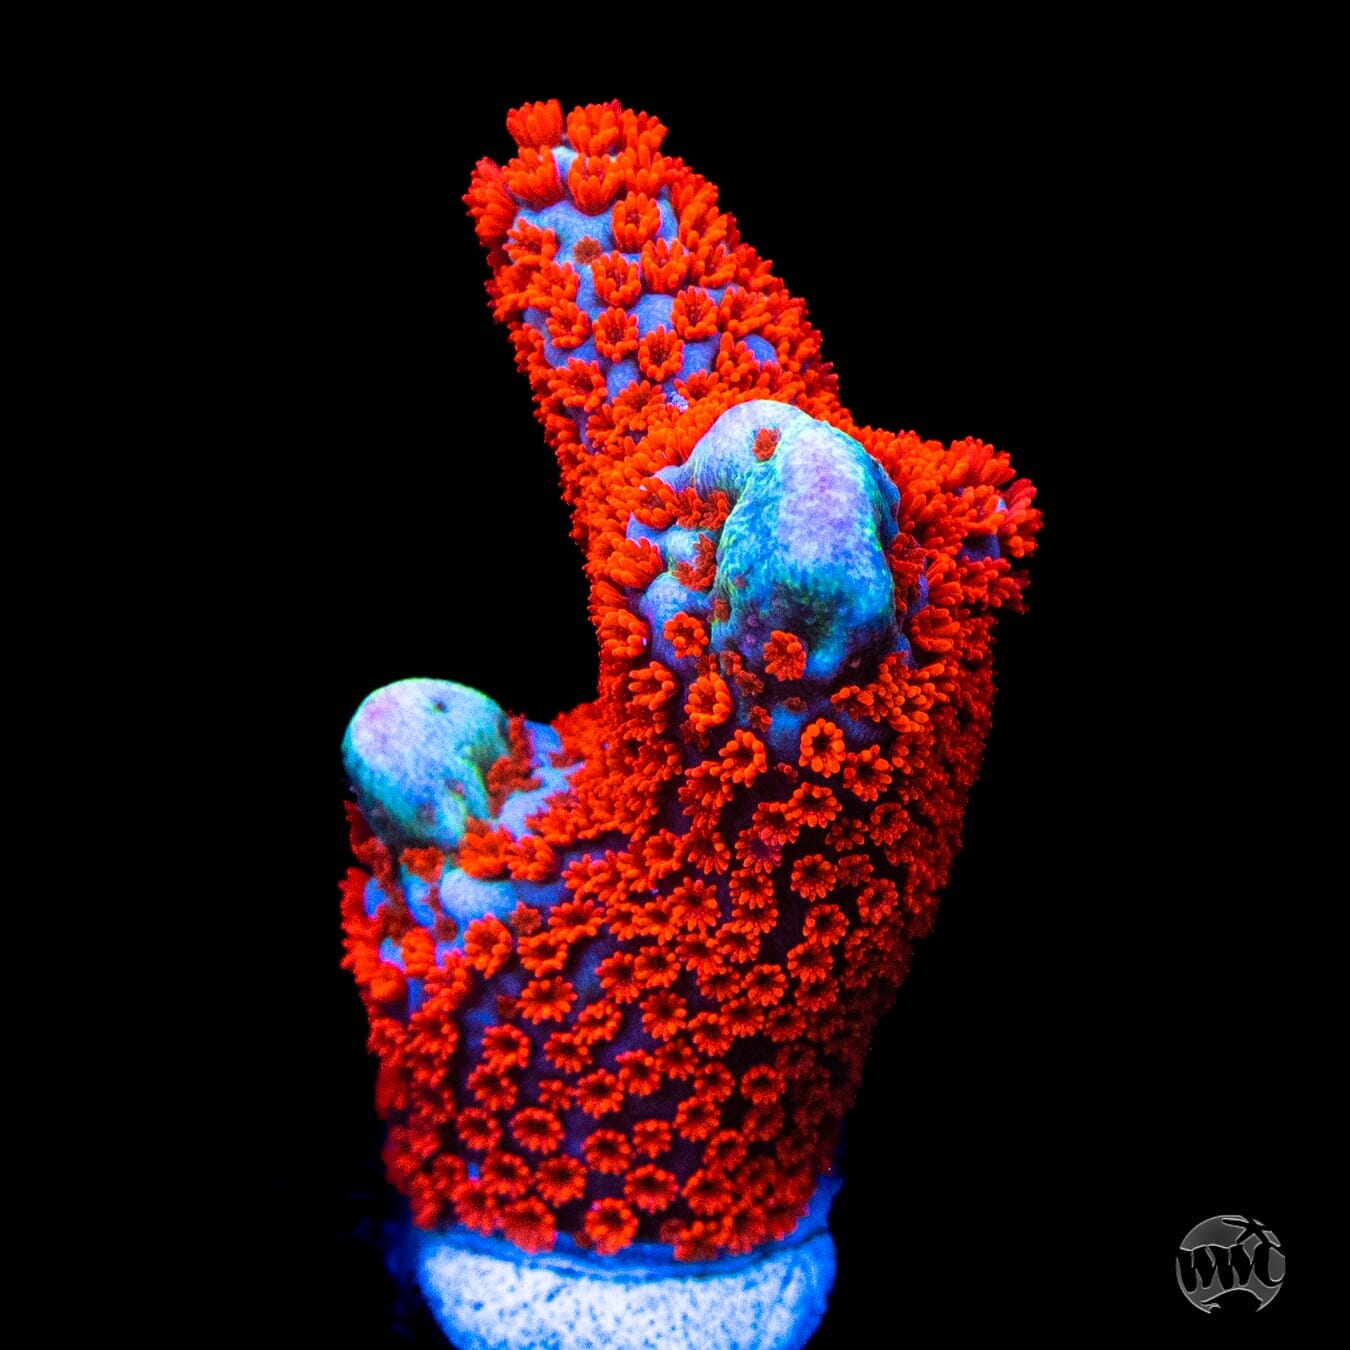 Bubblegum Digitata Montipora Coral